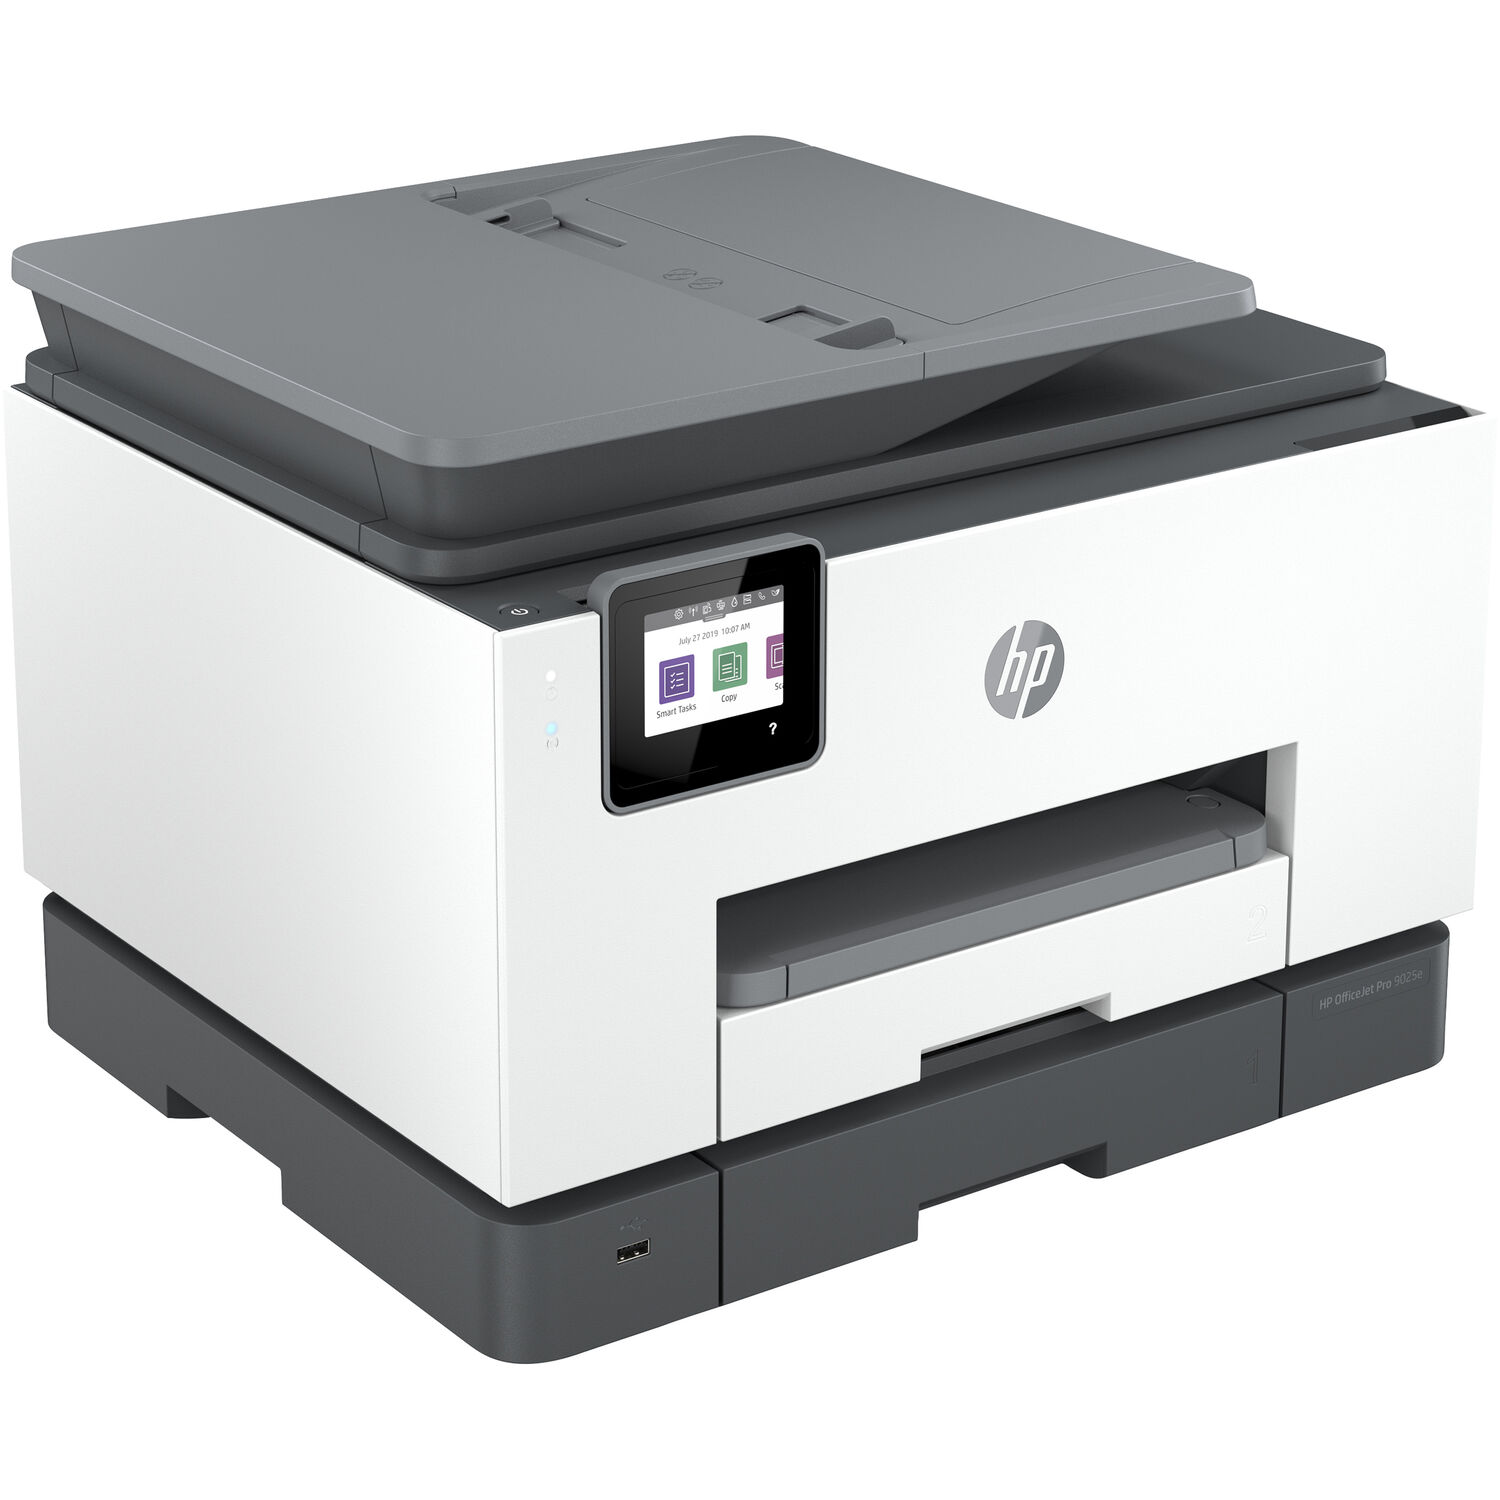 Impresora Multifunción Hp Officejet Pro 9025E con 6 Meses de Tinta Gratis a Través de Hp+